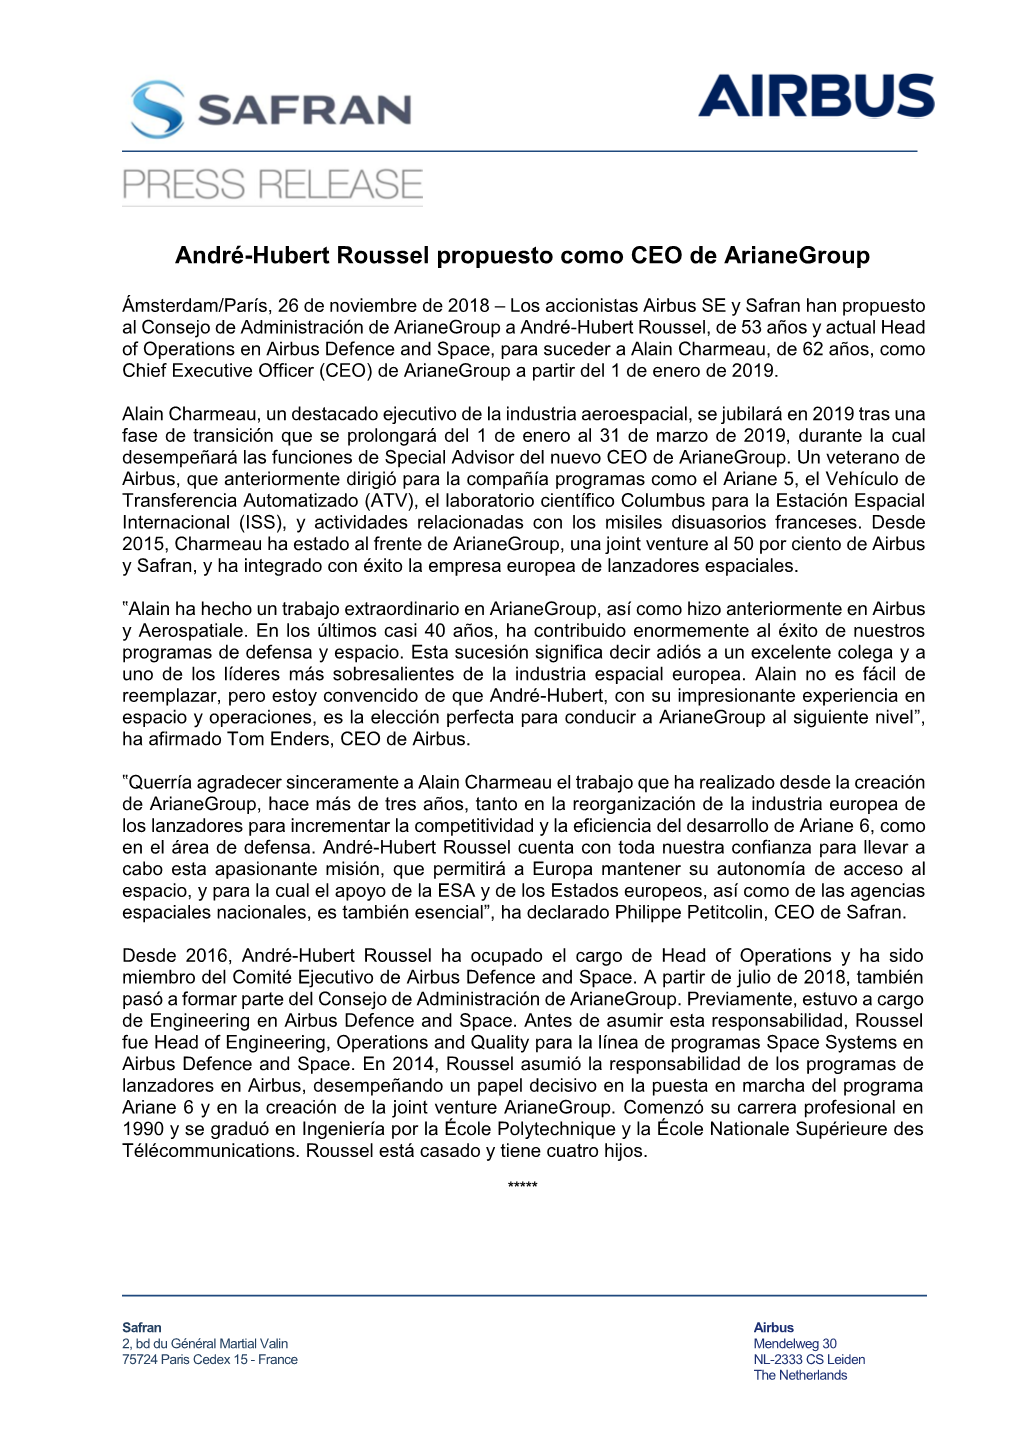 André-Hubert Roussel Propuesto Como CEO De Arianegroup